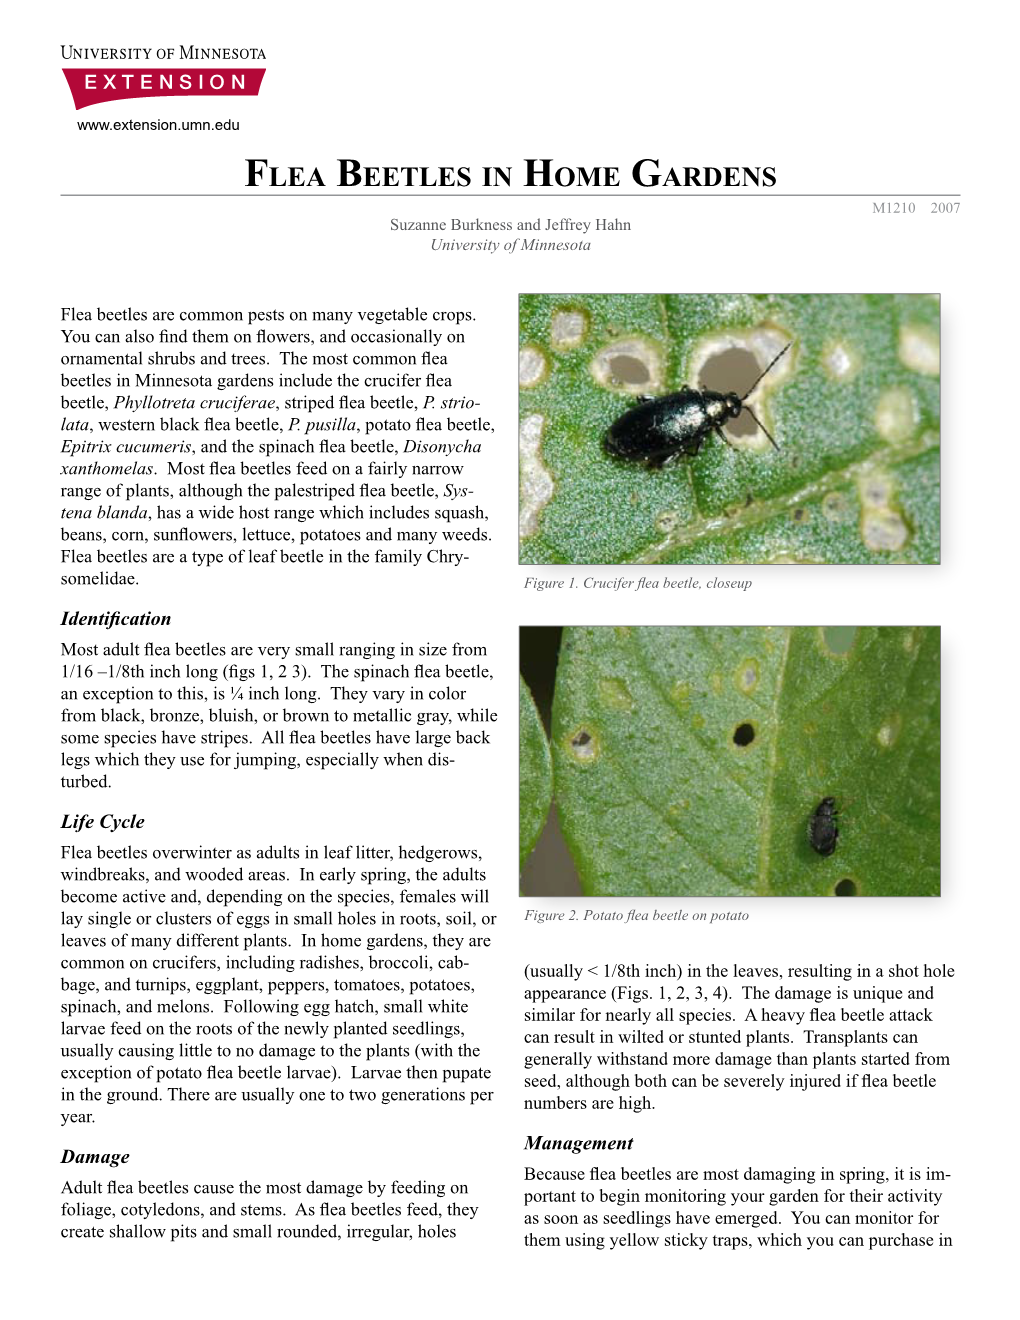 Flea Beetles in Home Gardens 2